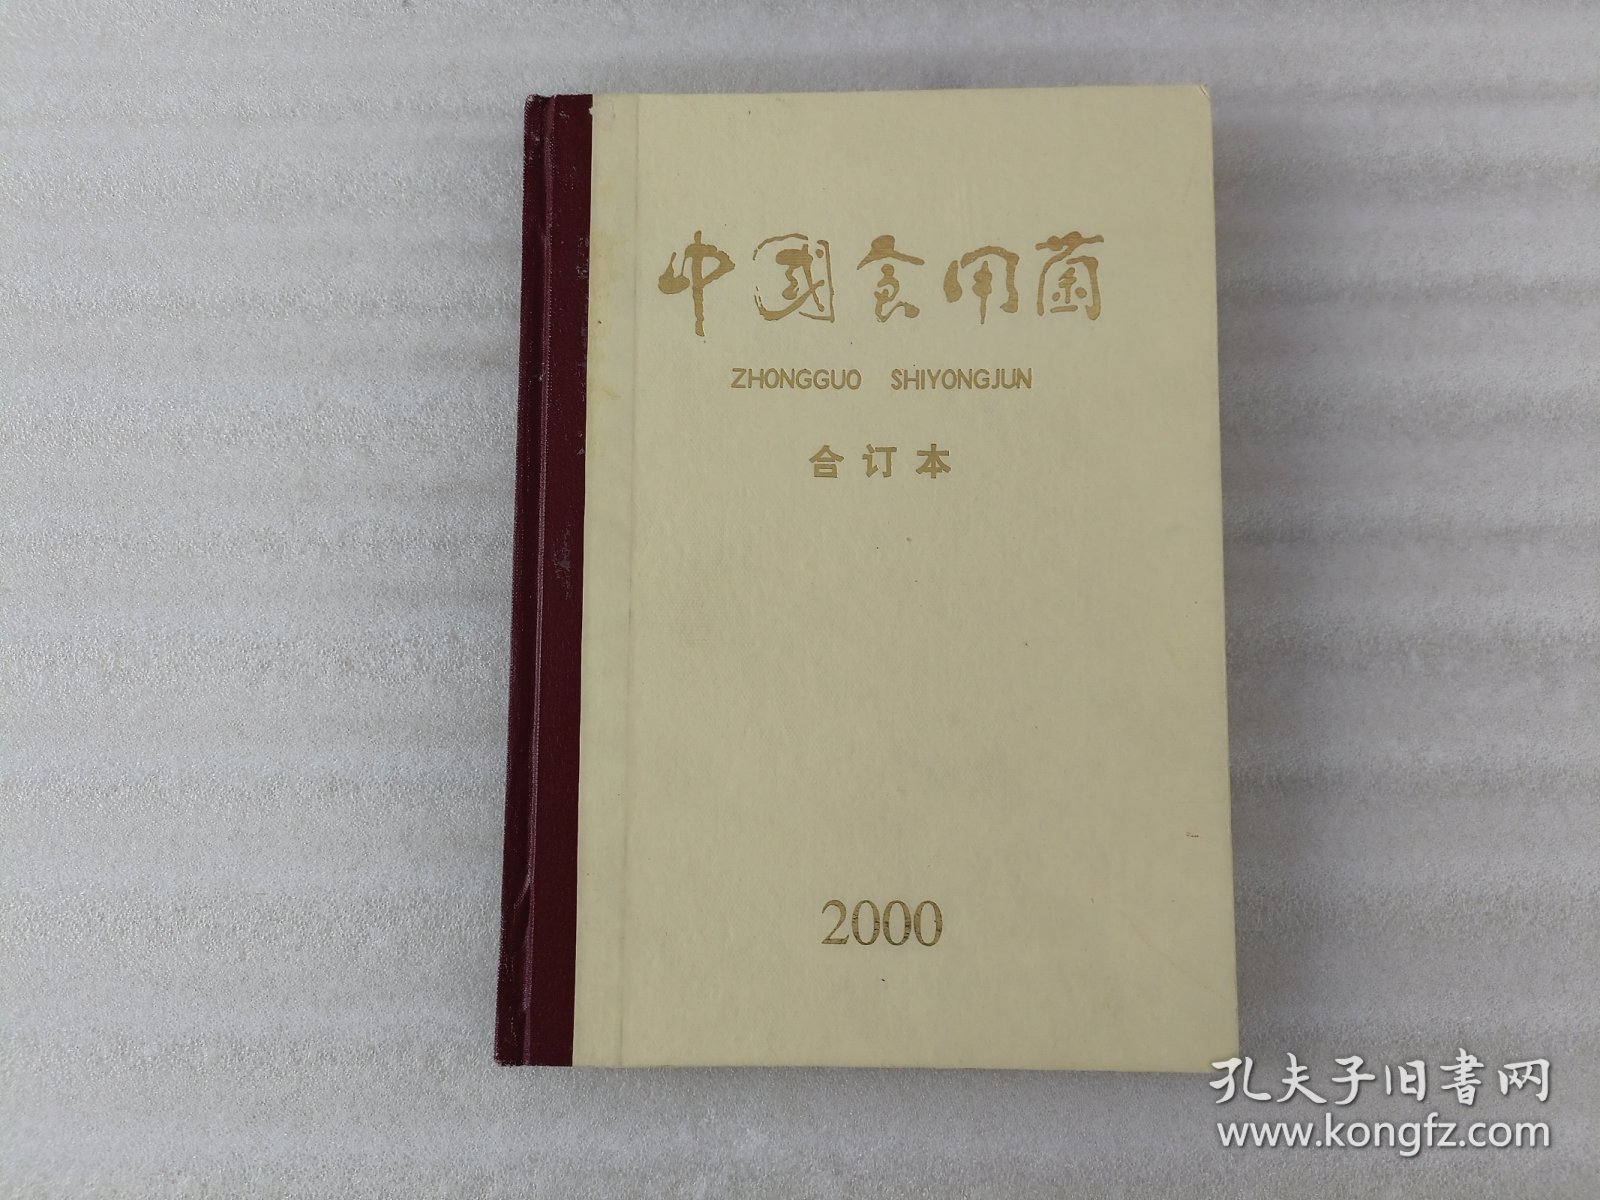 中国食用菌 2000年1-6期.合订本.精装